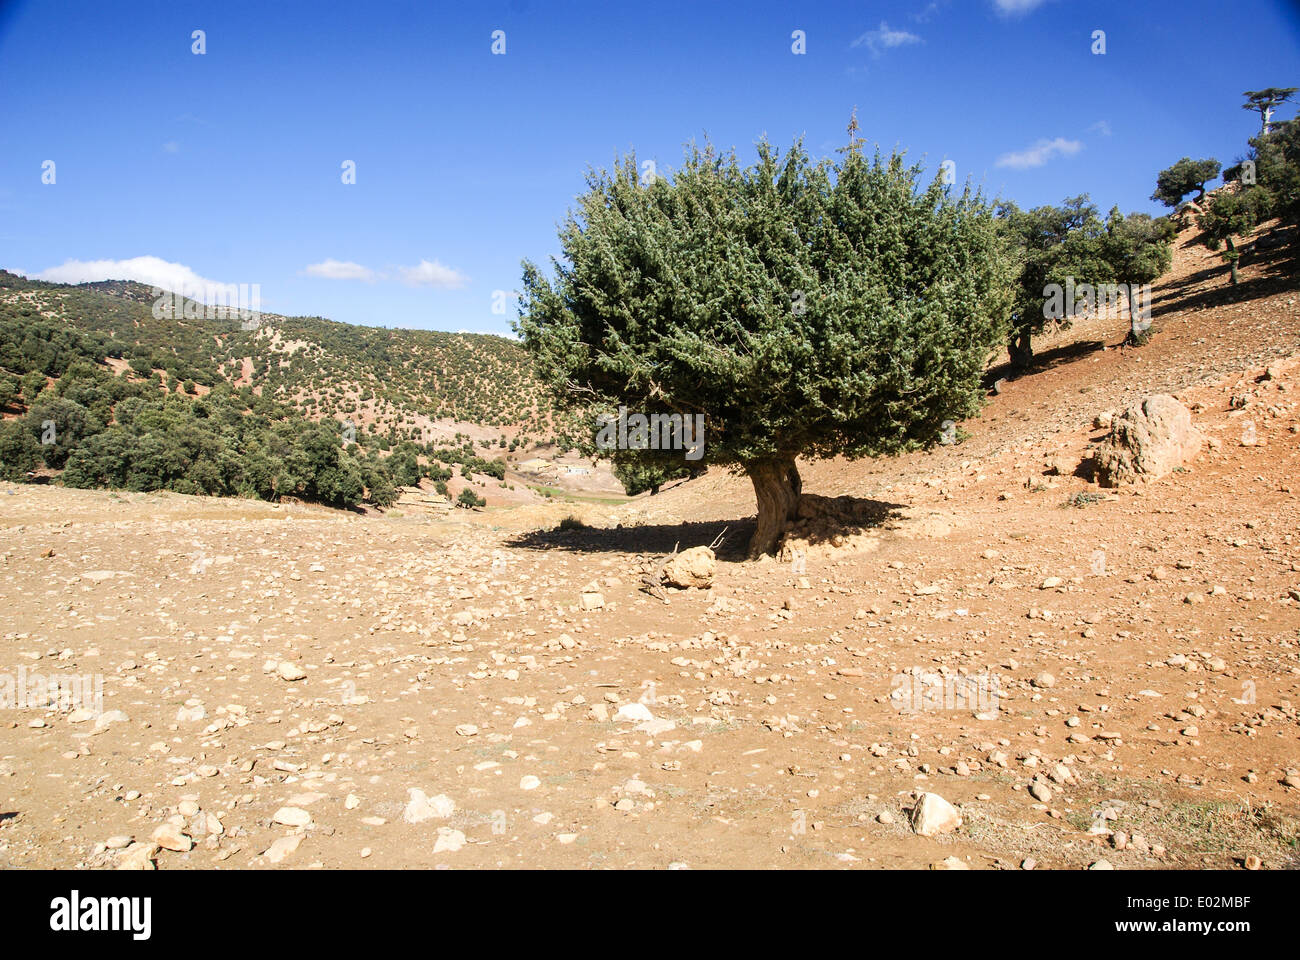 Juniperus oxycedrus (Prickly Juniper, figuier de cèdre, genévrier Cade et Sharp cèdre) photographié dans les montagnes de l'Atlas, Maroc Banque D'Images